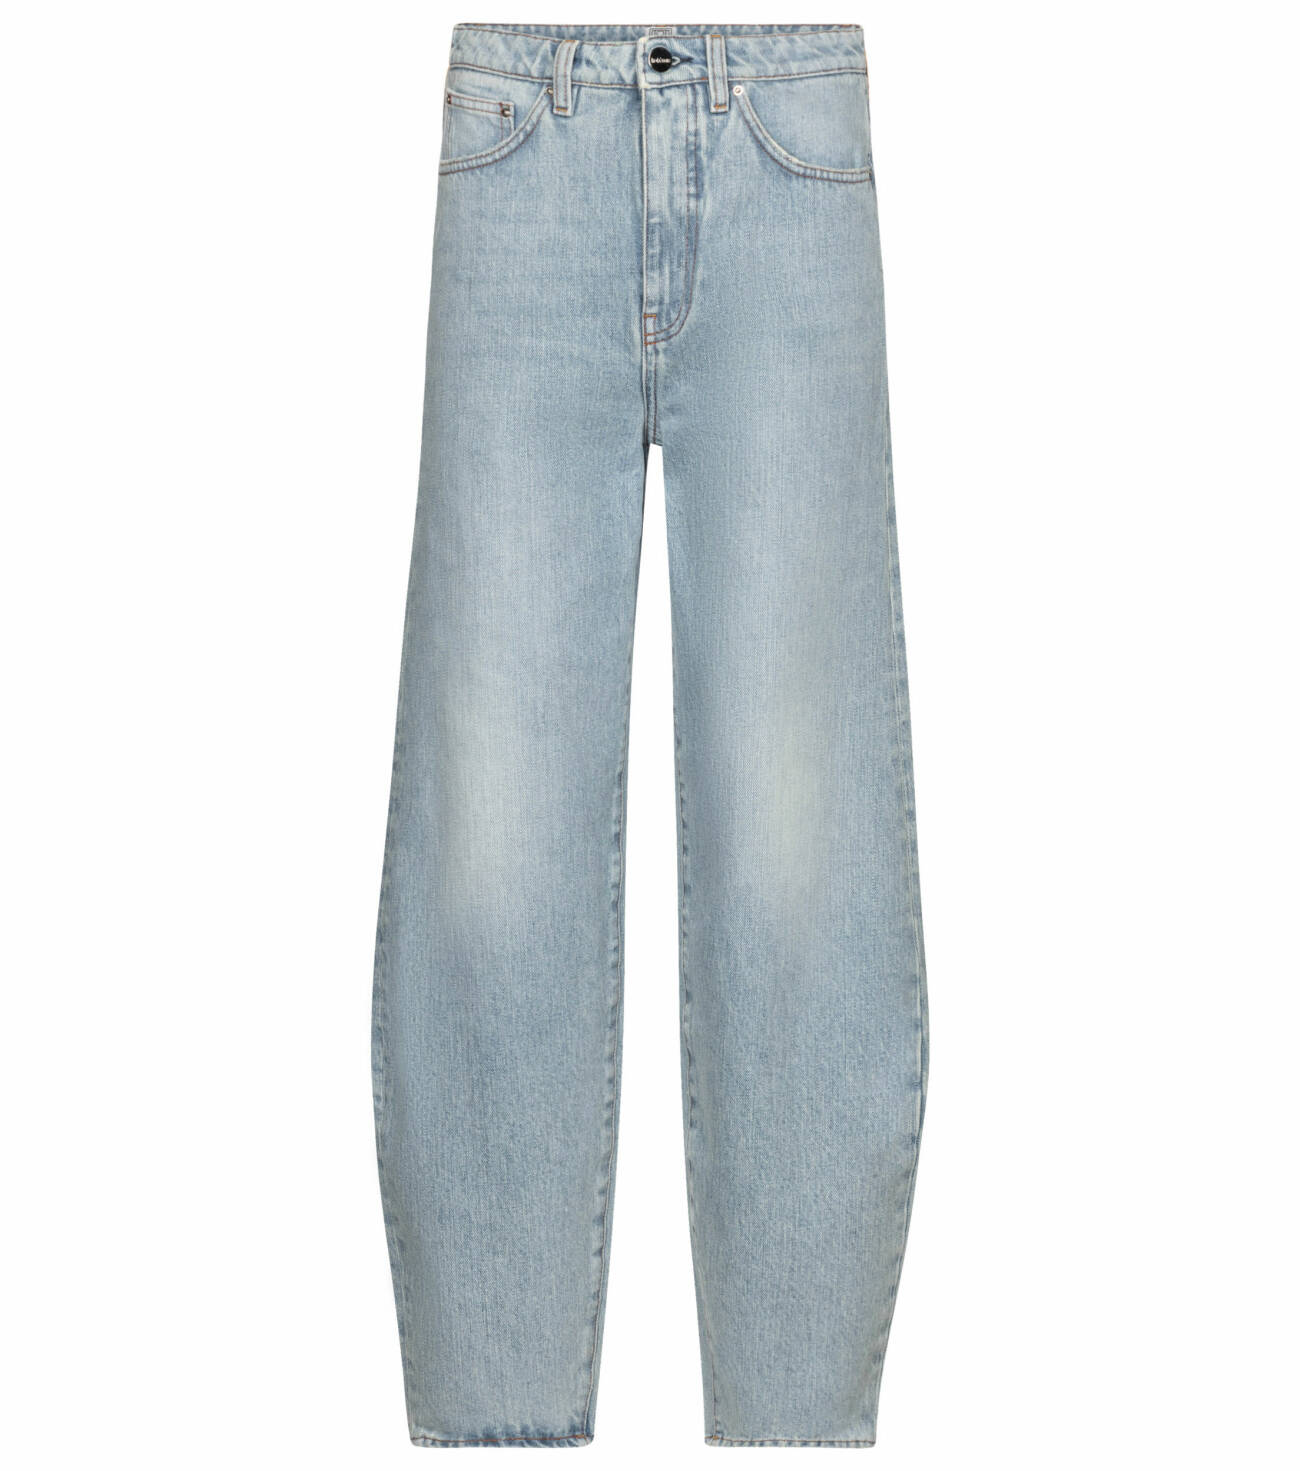 Jeans i ljus tvätt och avslappnad modell